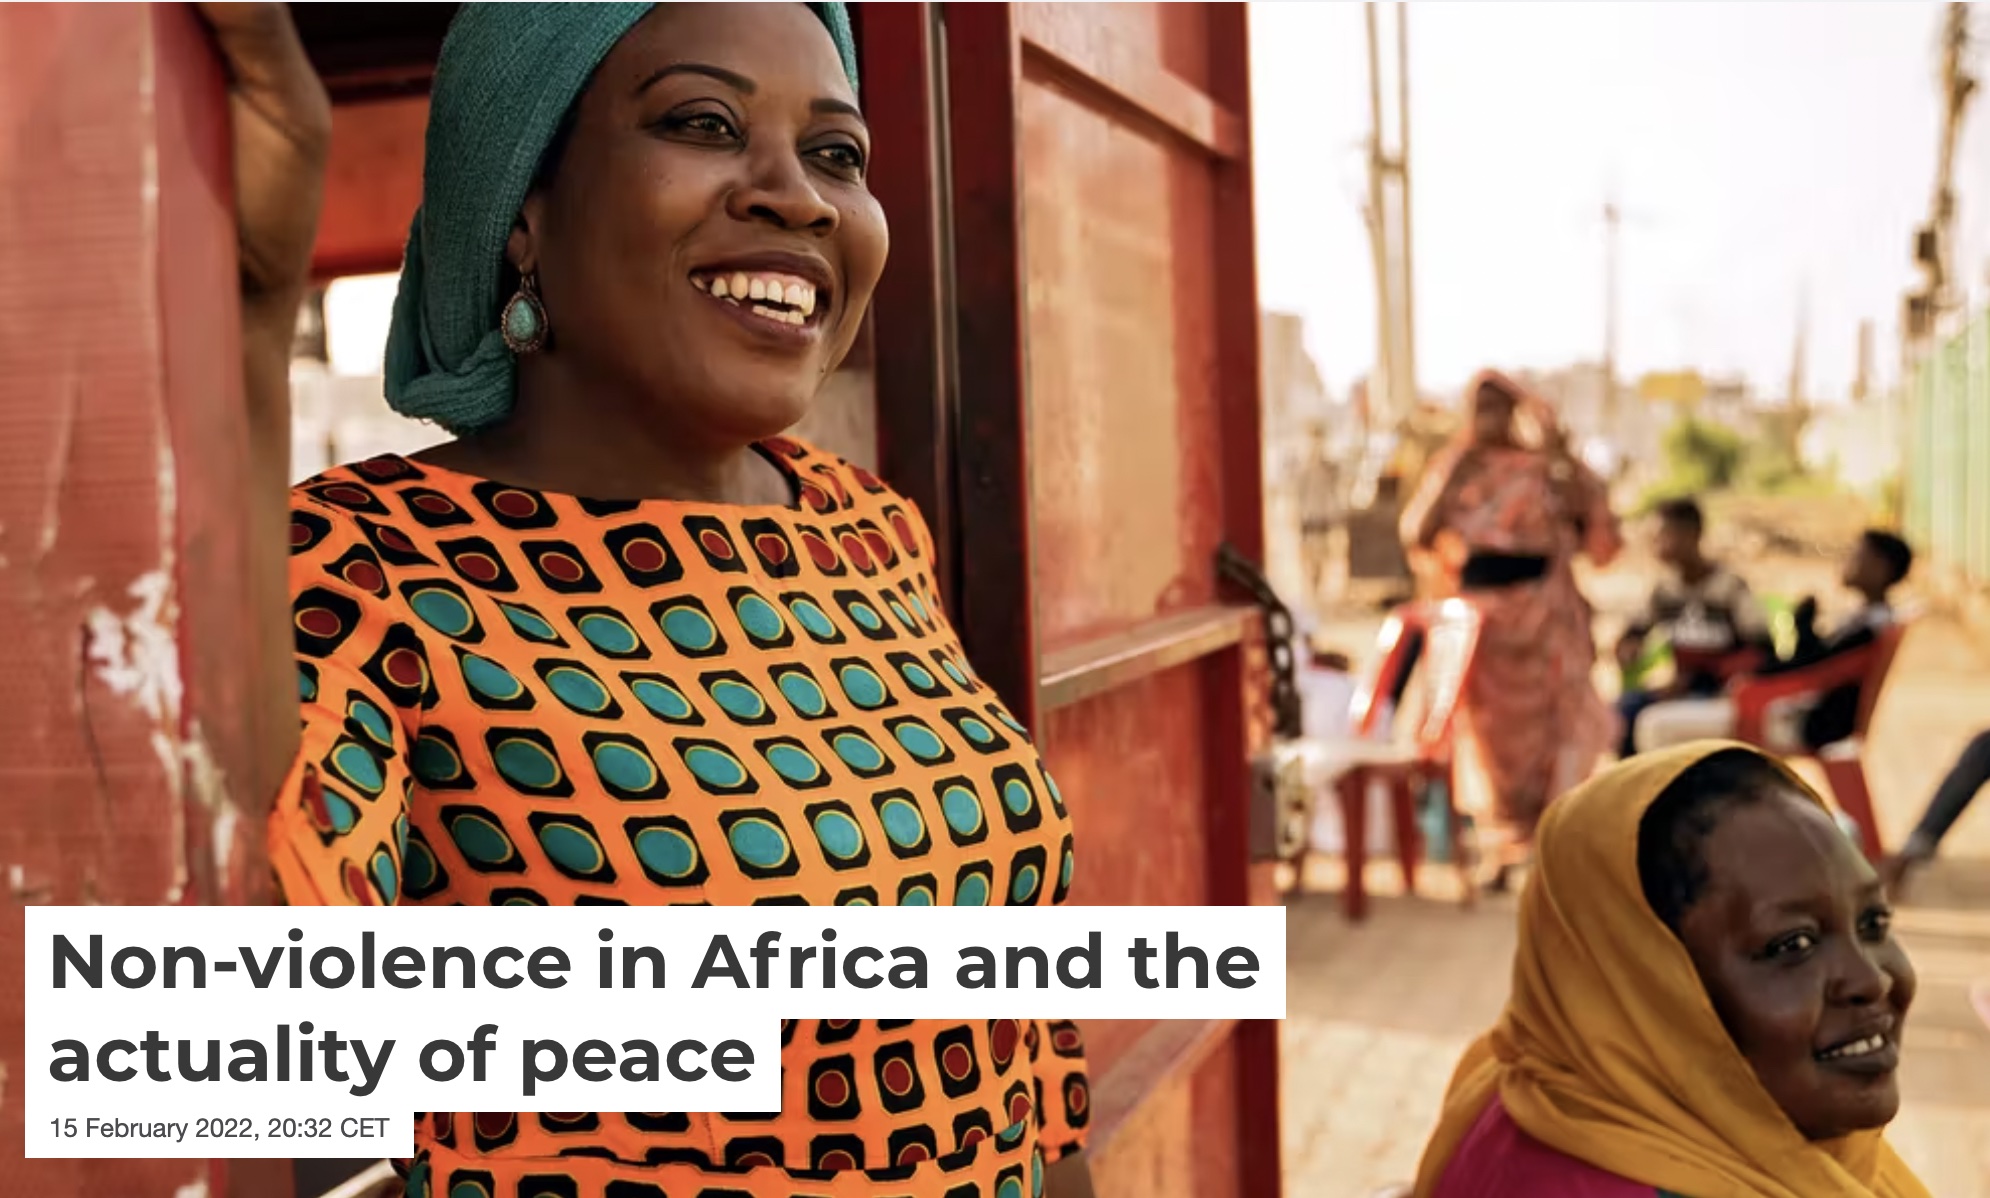 La no-violencie en Africa y la actualidad de la paz